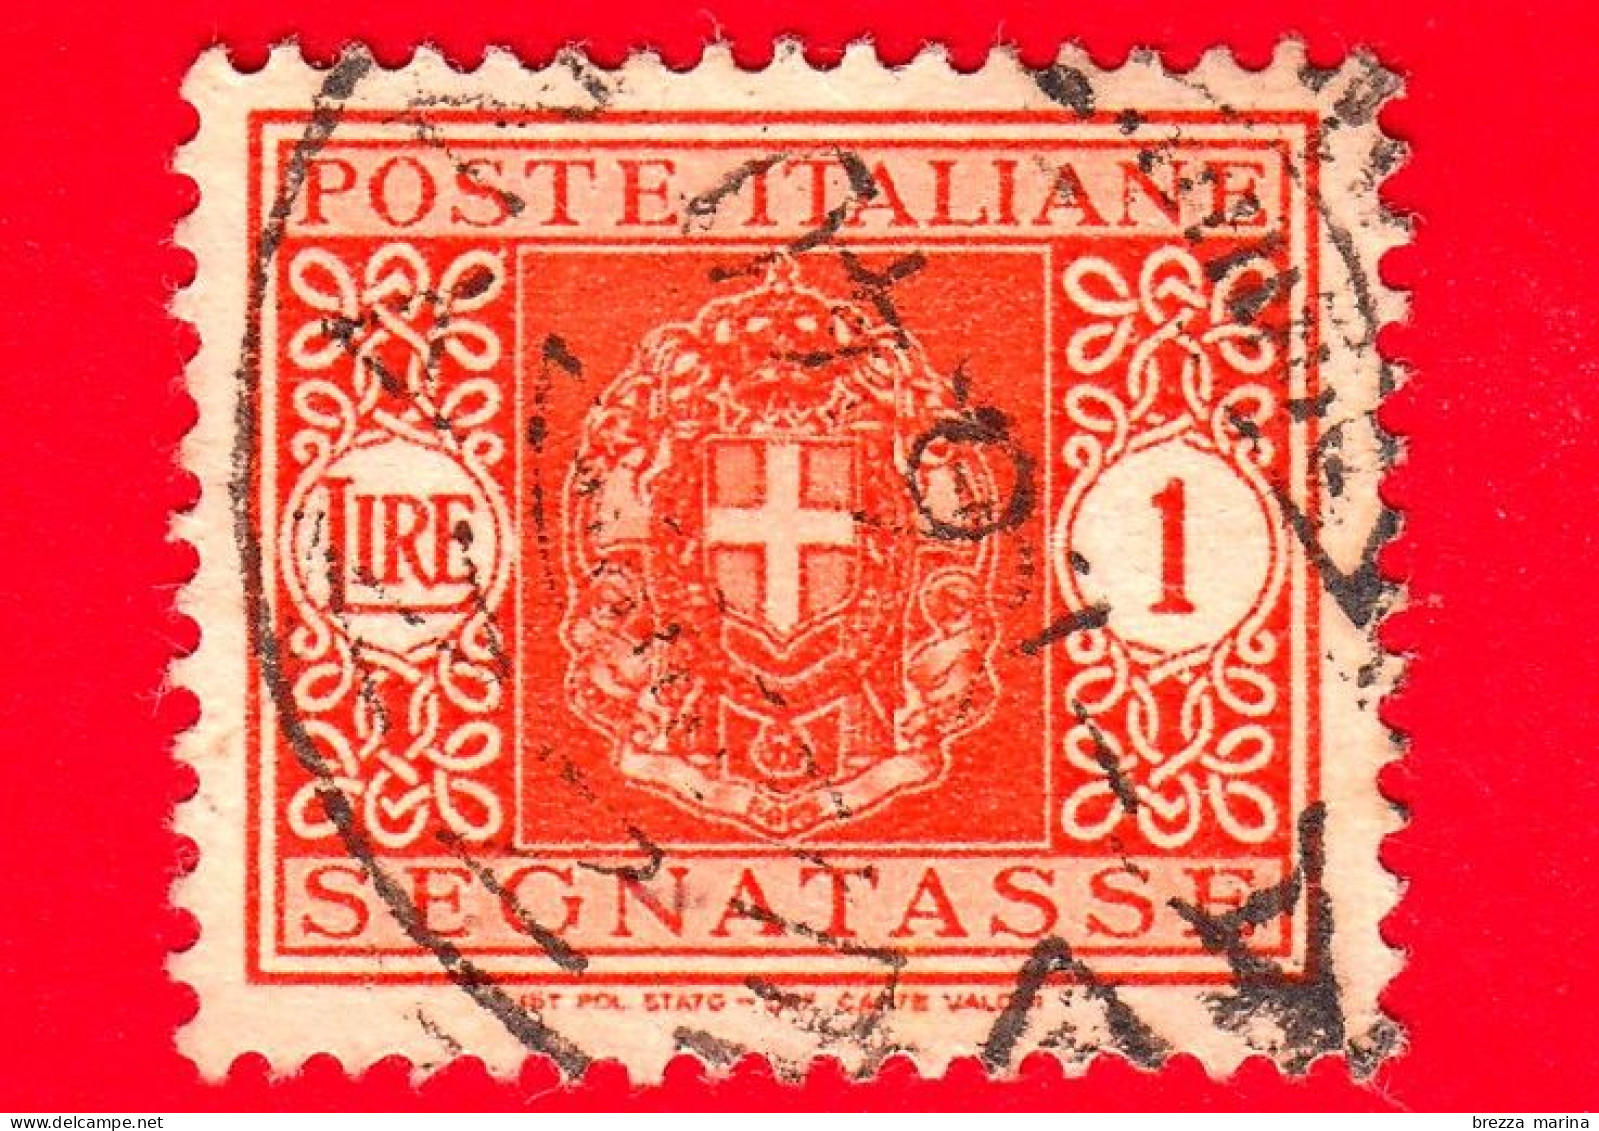 ITALIA - Usato - 1945 - Segnatasse - Stemma Senza Fasci, Filigrana Ruota - 1 L. - Segnatasse